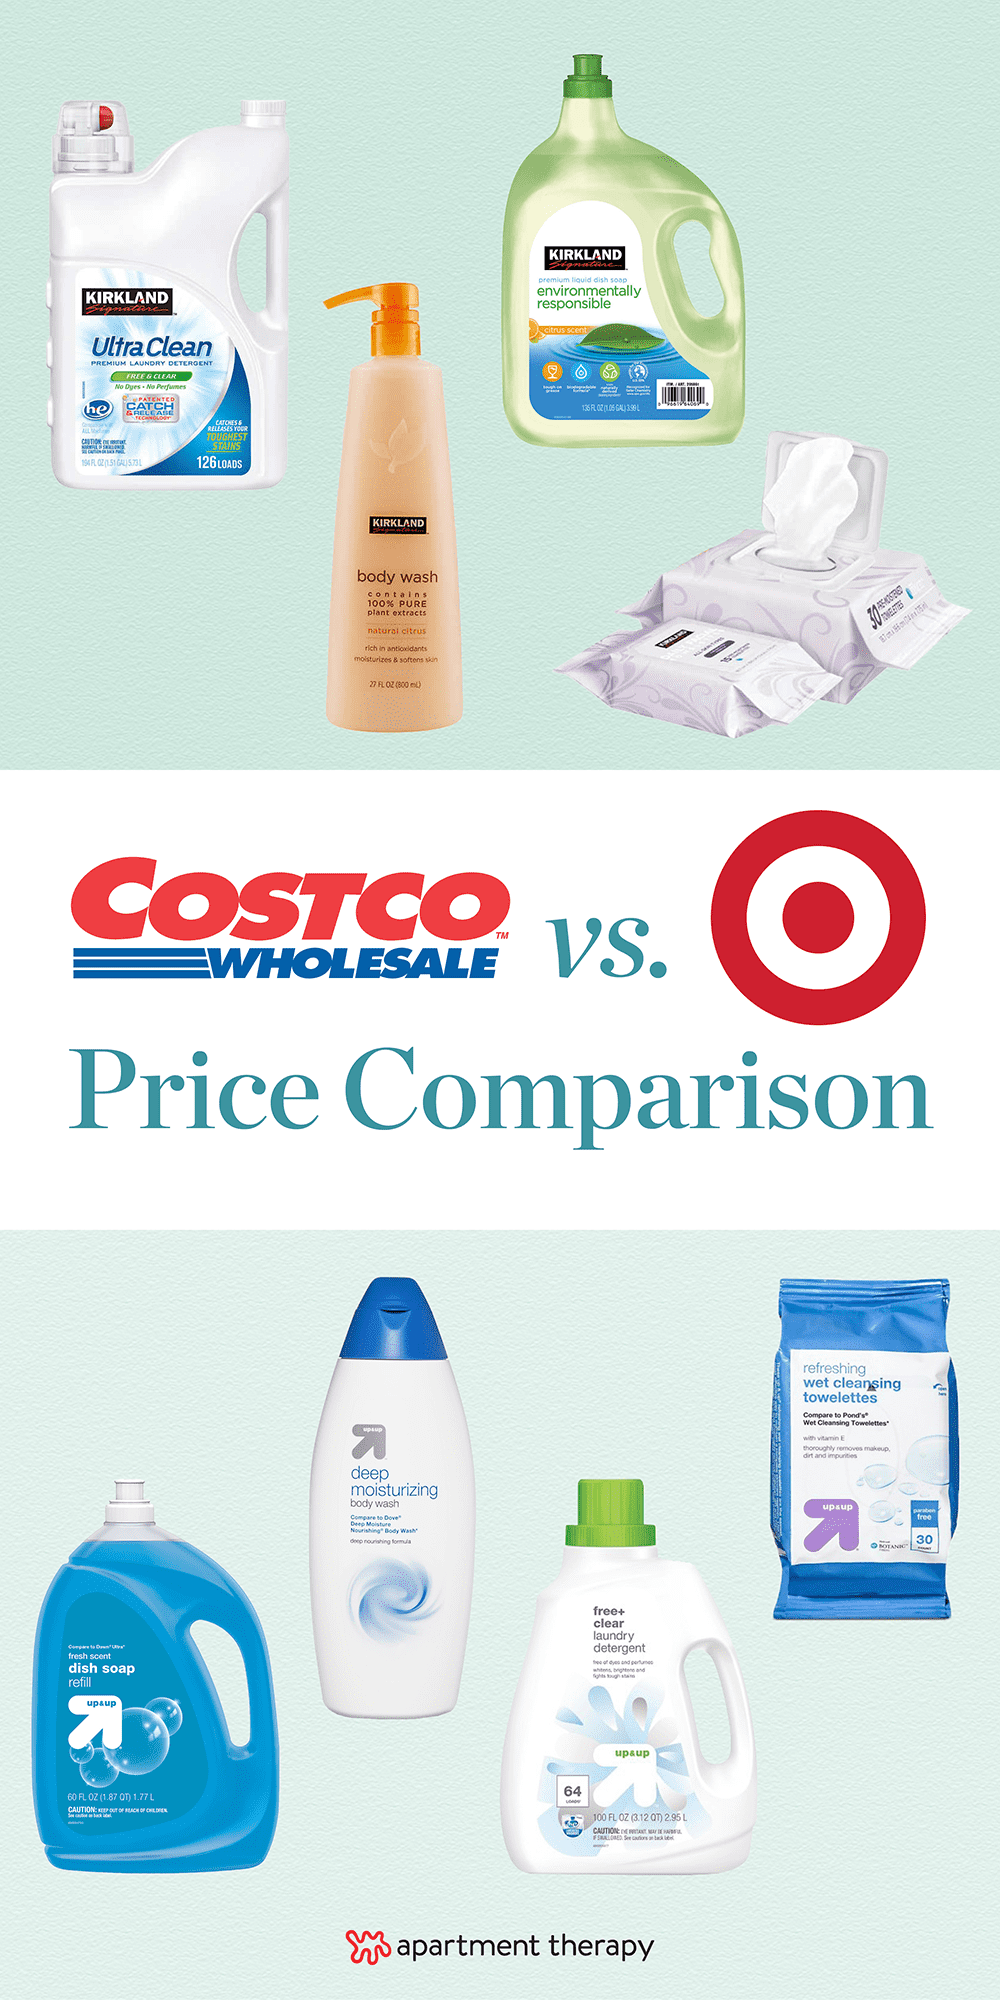 Costco vs. Target Price Comparison